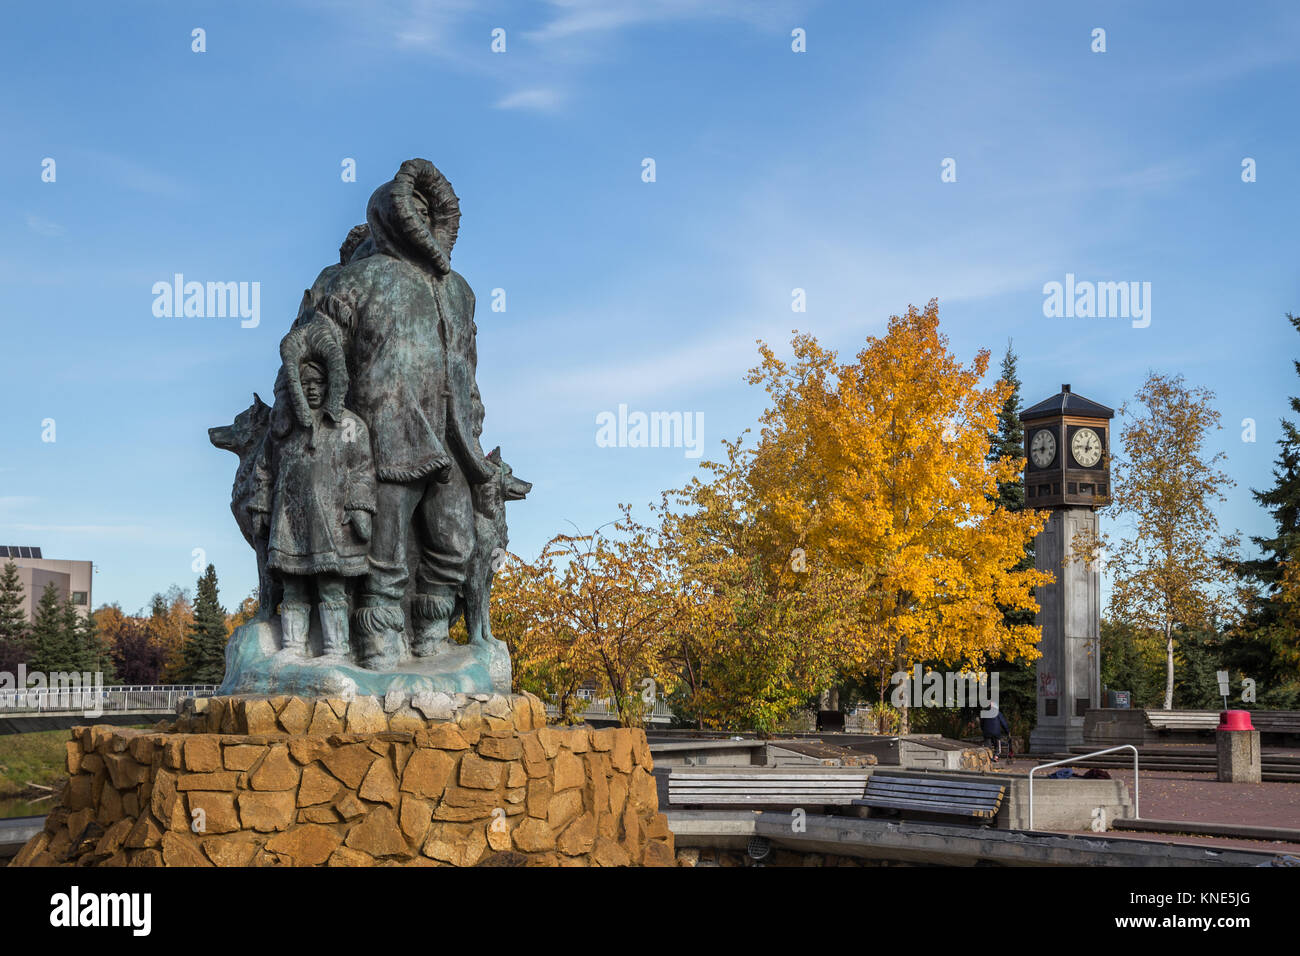 Unbekannte erste Familie Statue im goldenen Herzen Park in Fairbanks, Alaska, USA im Herbst zeigen Fairbanks Rotary 50-Uhr und Glockenspiel Stockfoto